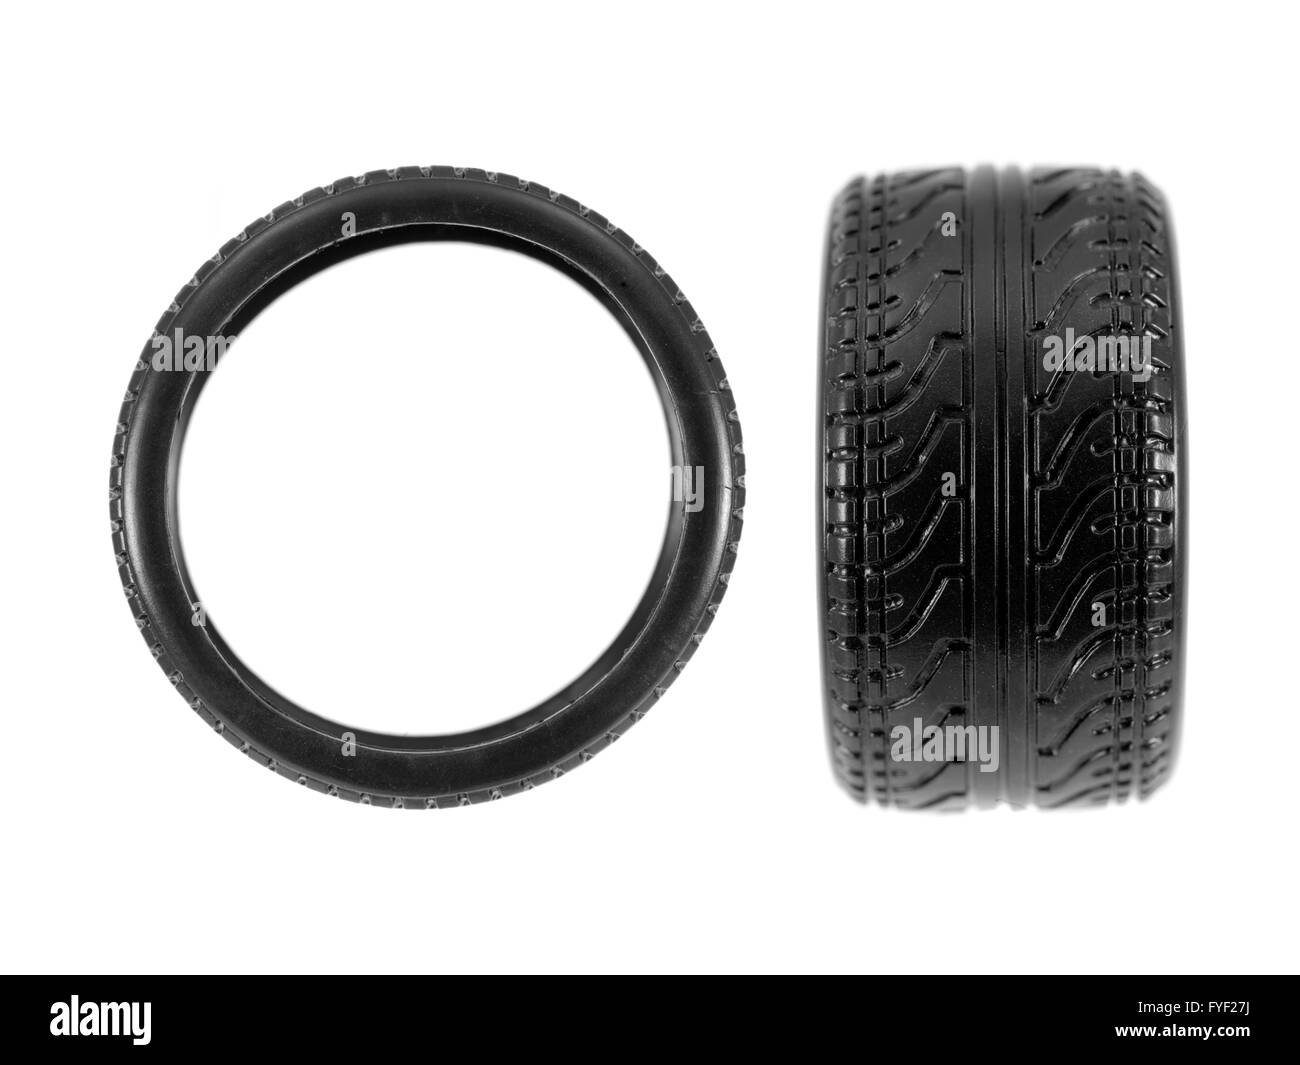 A basso profilo pneumatici isolati su sfondo bianco Foto Stock